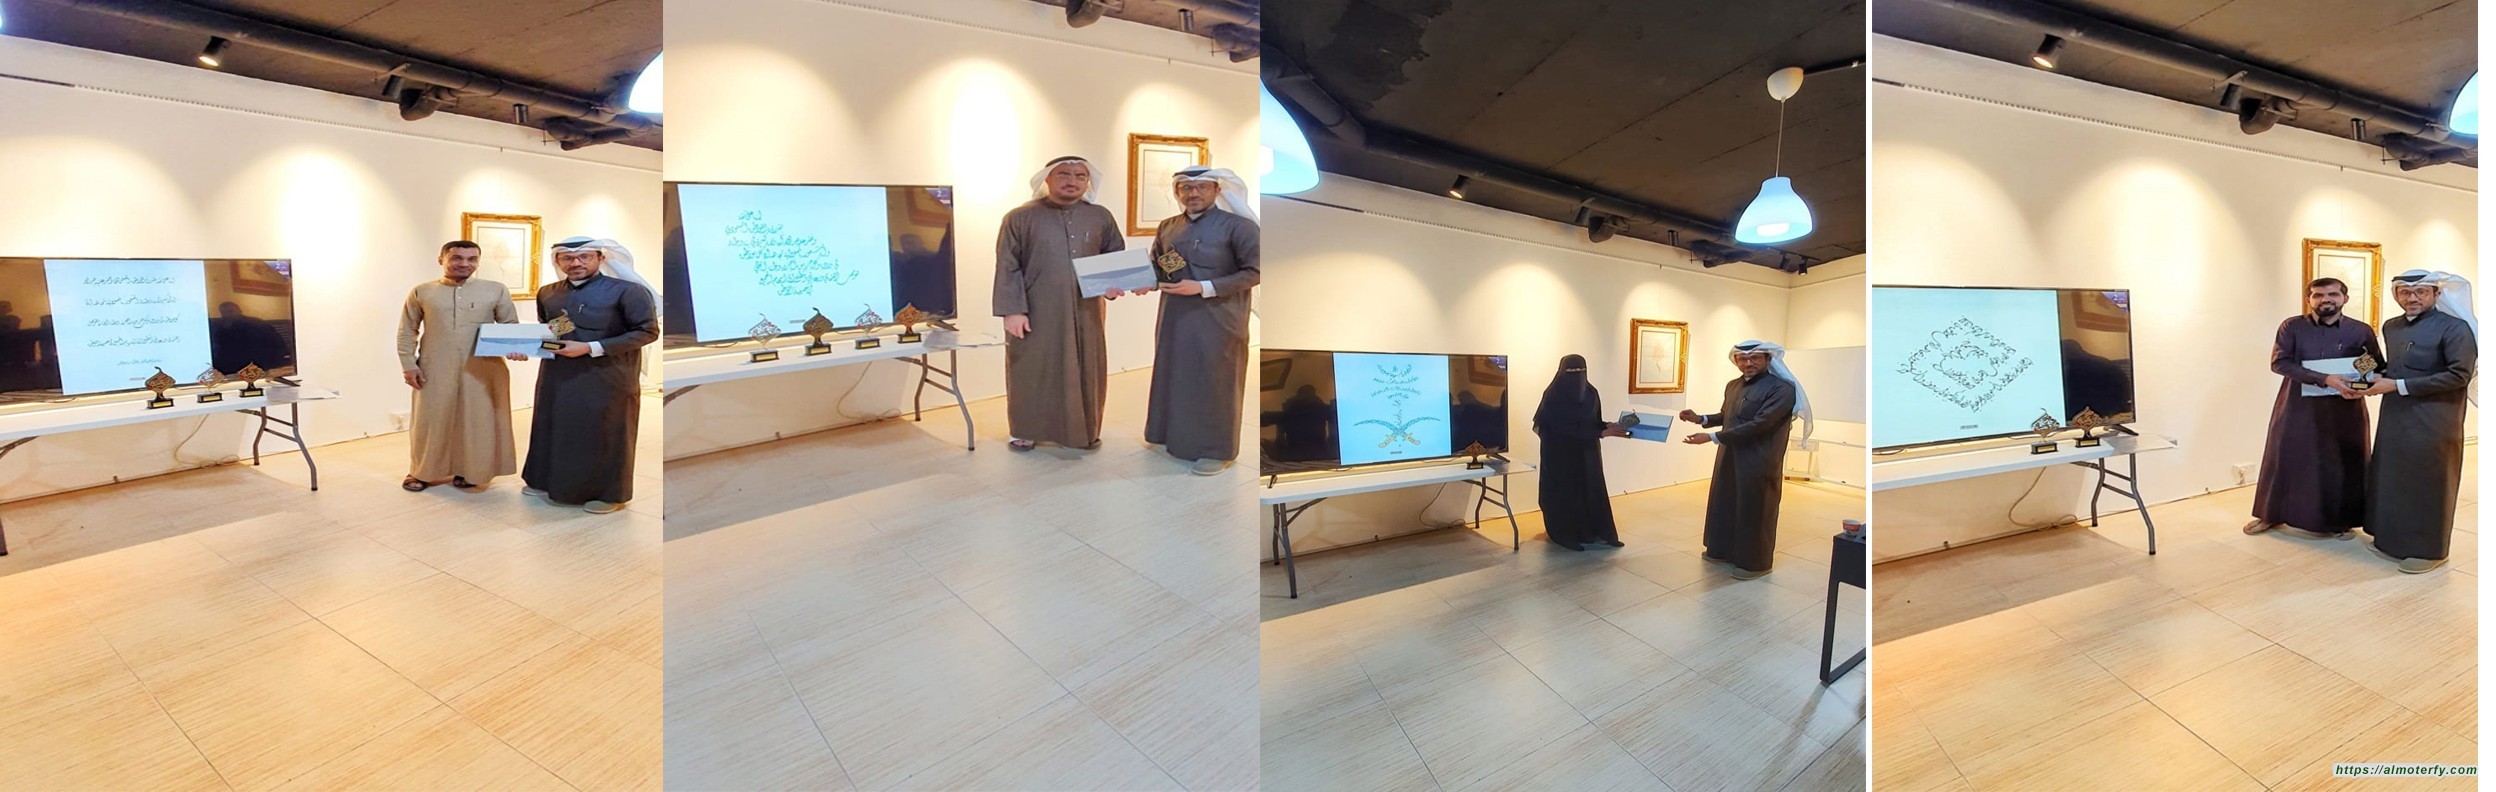 دار الخط العربي بالأحساء  تحتفي باعضائها المشاركين و الفائزين في مسابقة خطٌّ من تراثنا